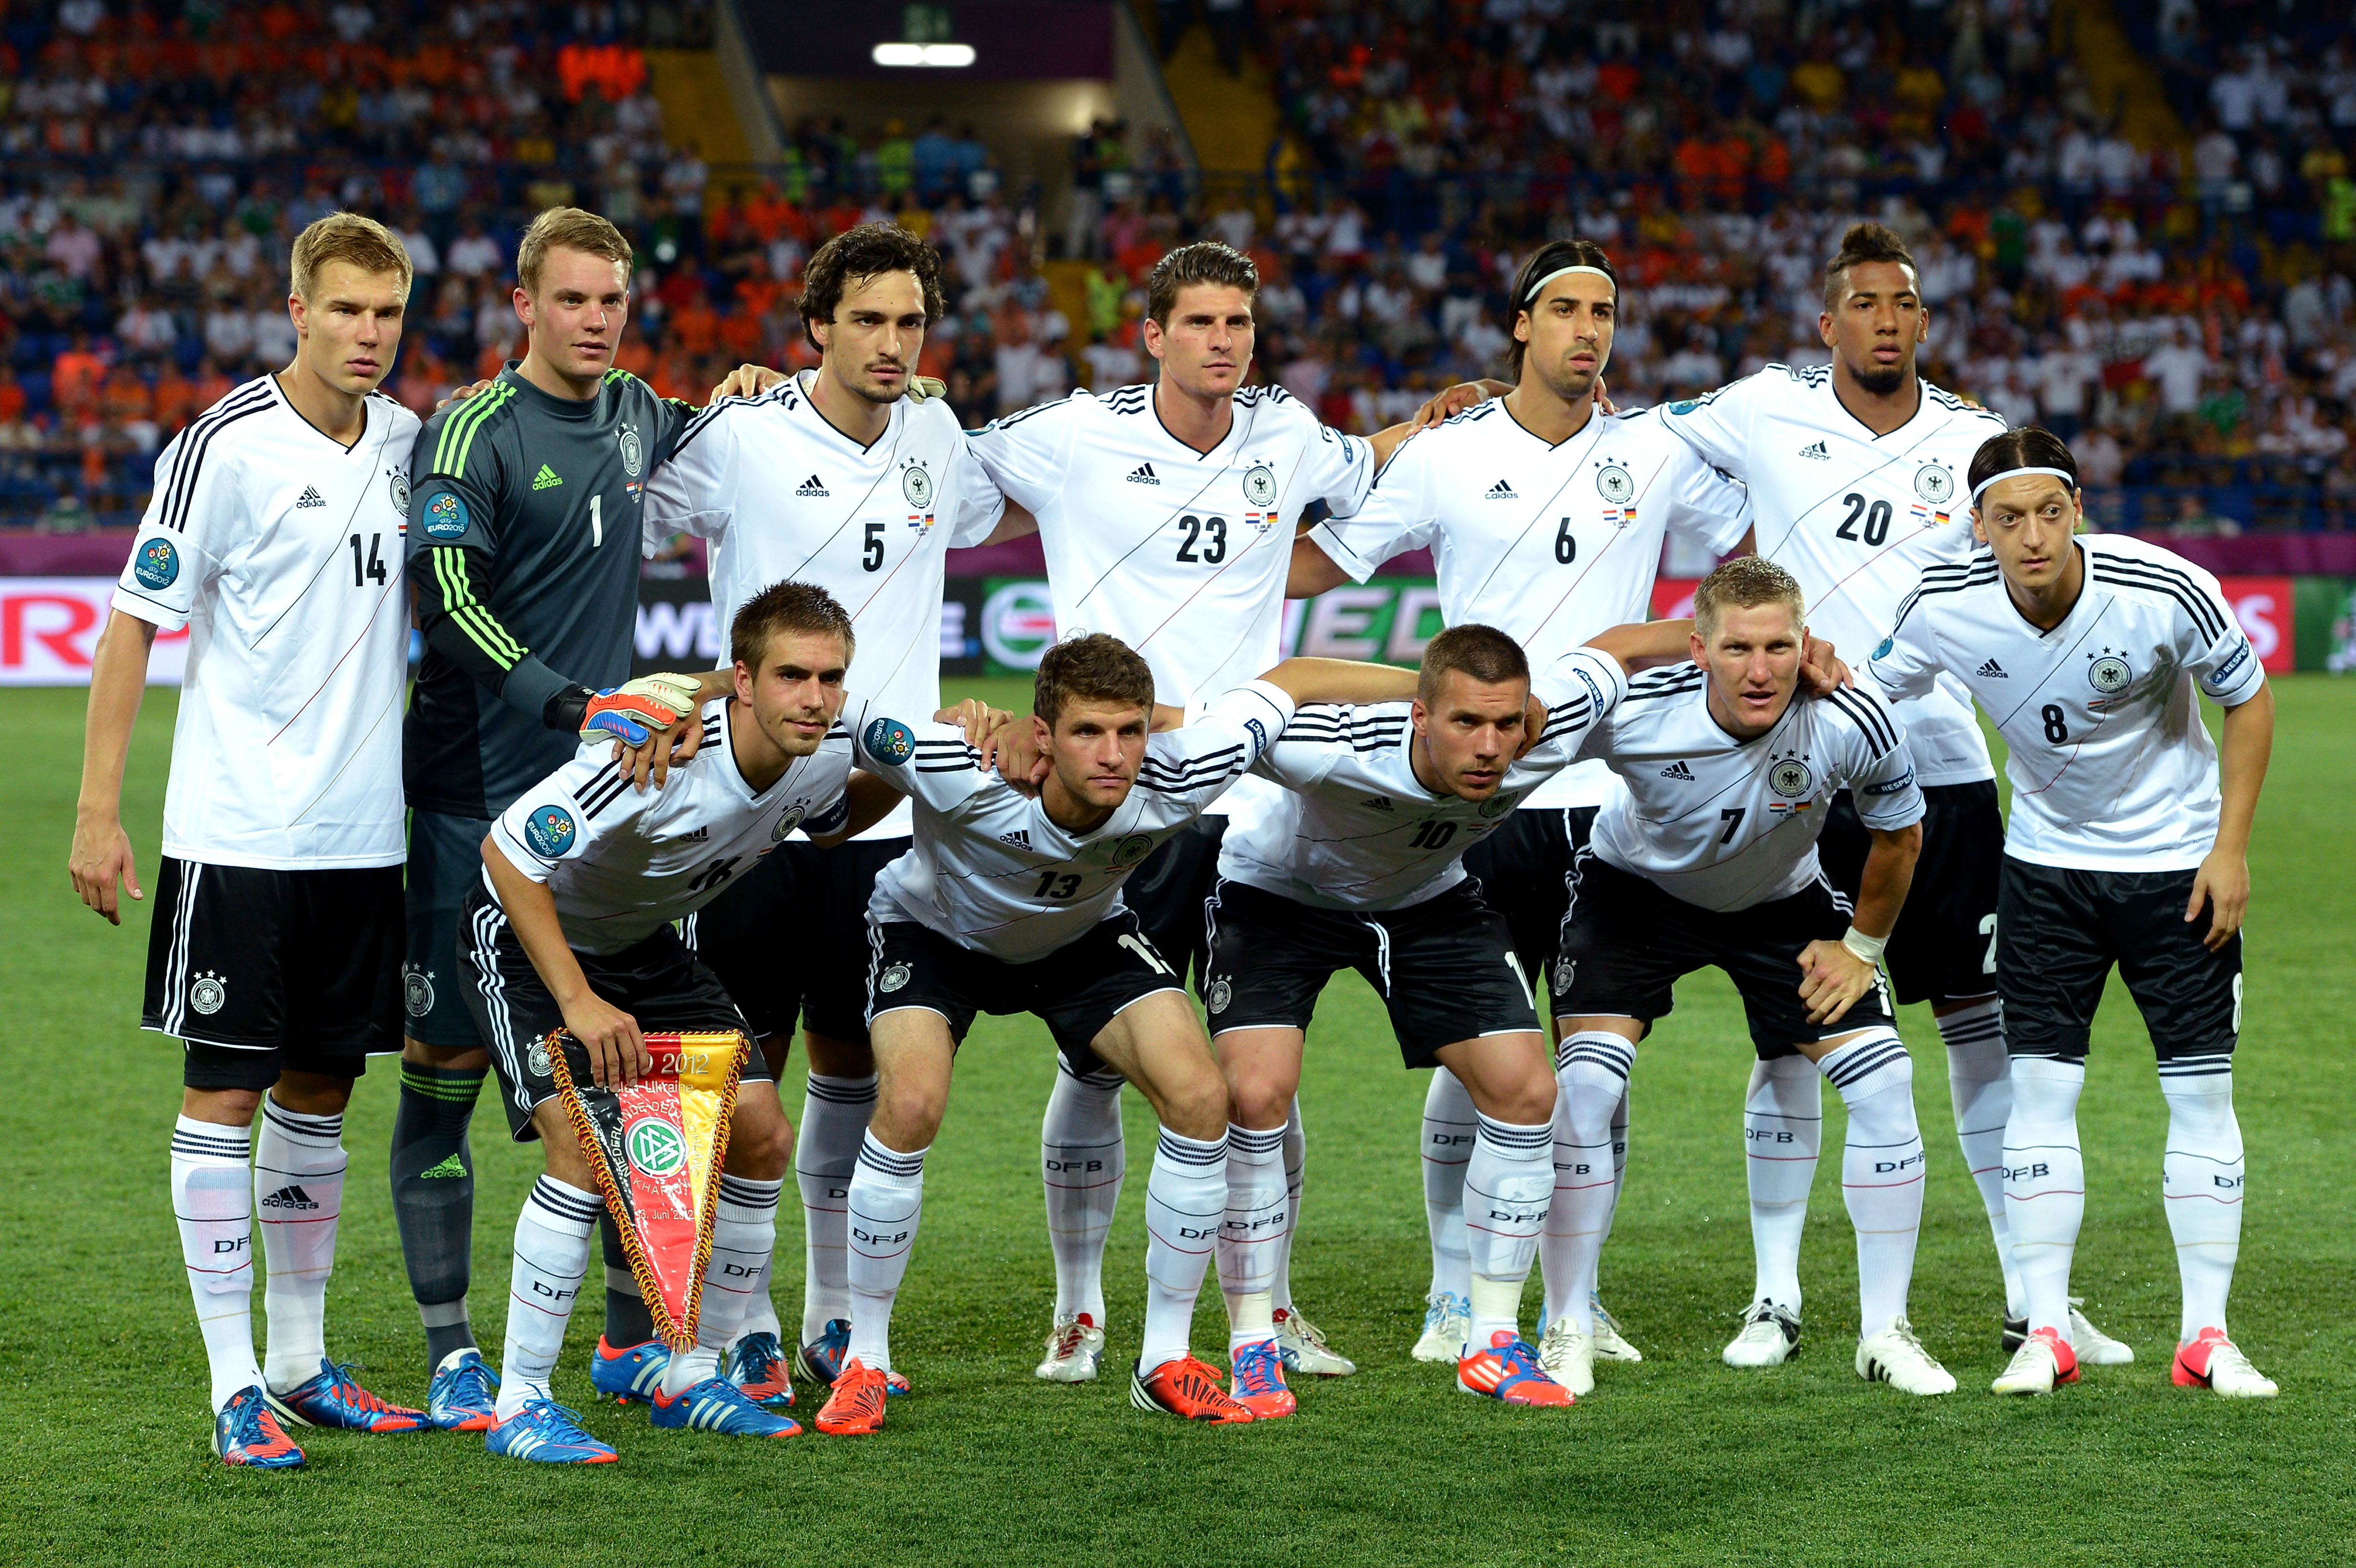 Tyskland kan bara missa slutspel om Portugal vinner mot Holland samtidigt som de förlorar mot Danmark med vilket resultat som helst förutom med 3-2 eller större siffror. Så tippar zebrafisken Zlatan.